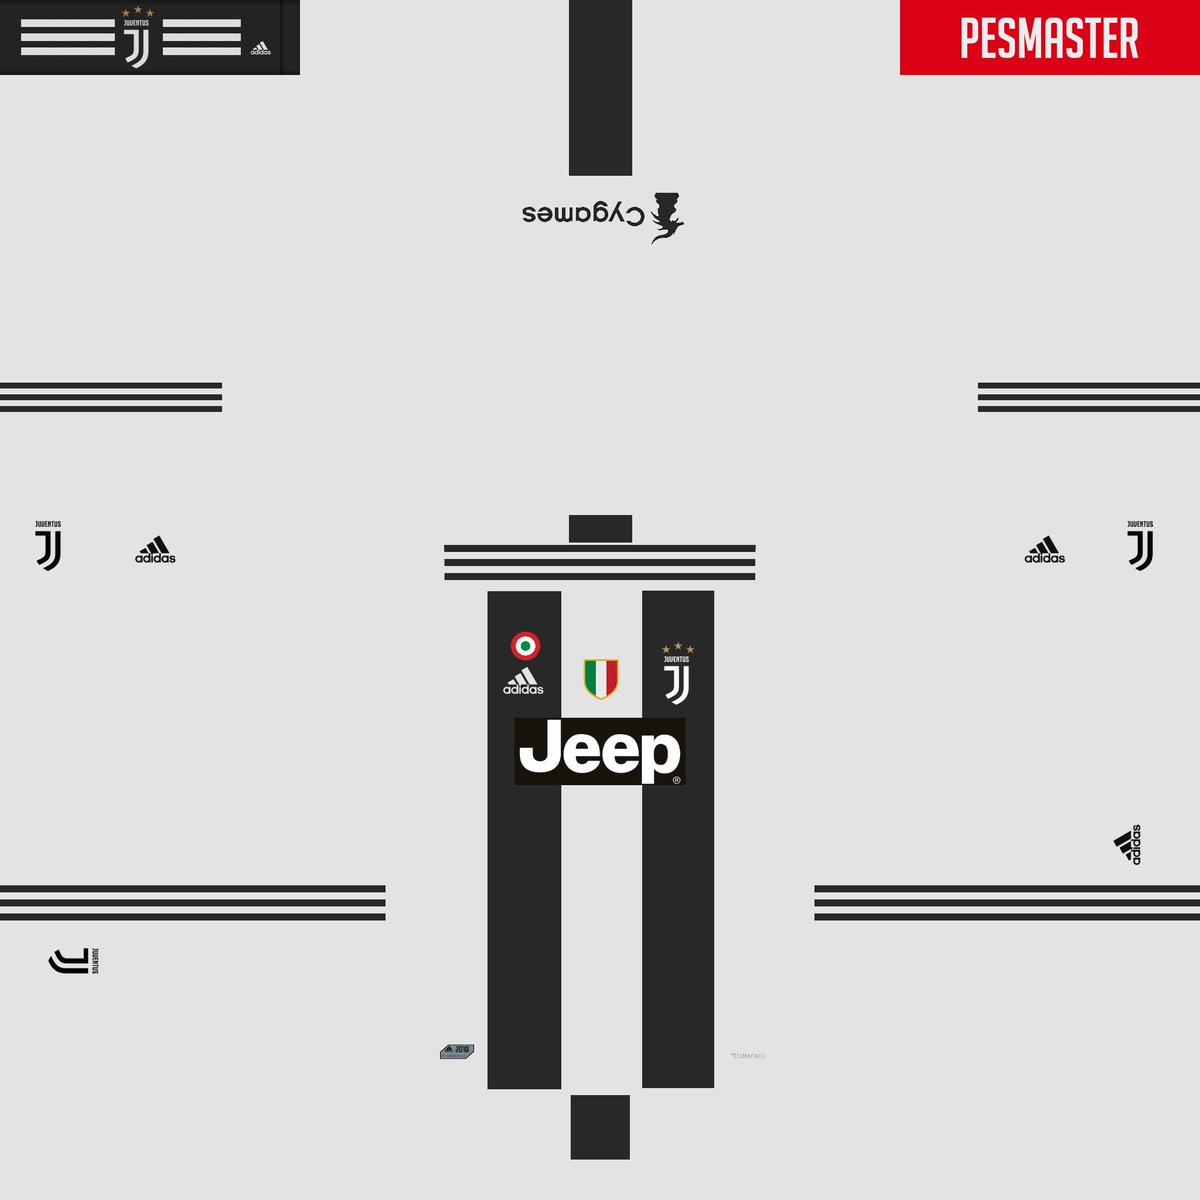 ポコ Takahiro ユベントスのユニフォーム作ってみた 初めてあってるか分からんけど Pes18 ウイイレ18 ウイイレエディット Pesedit ユニフォーム Juventus